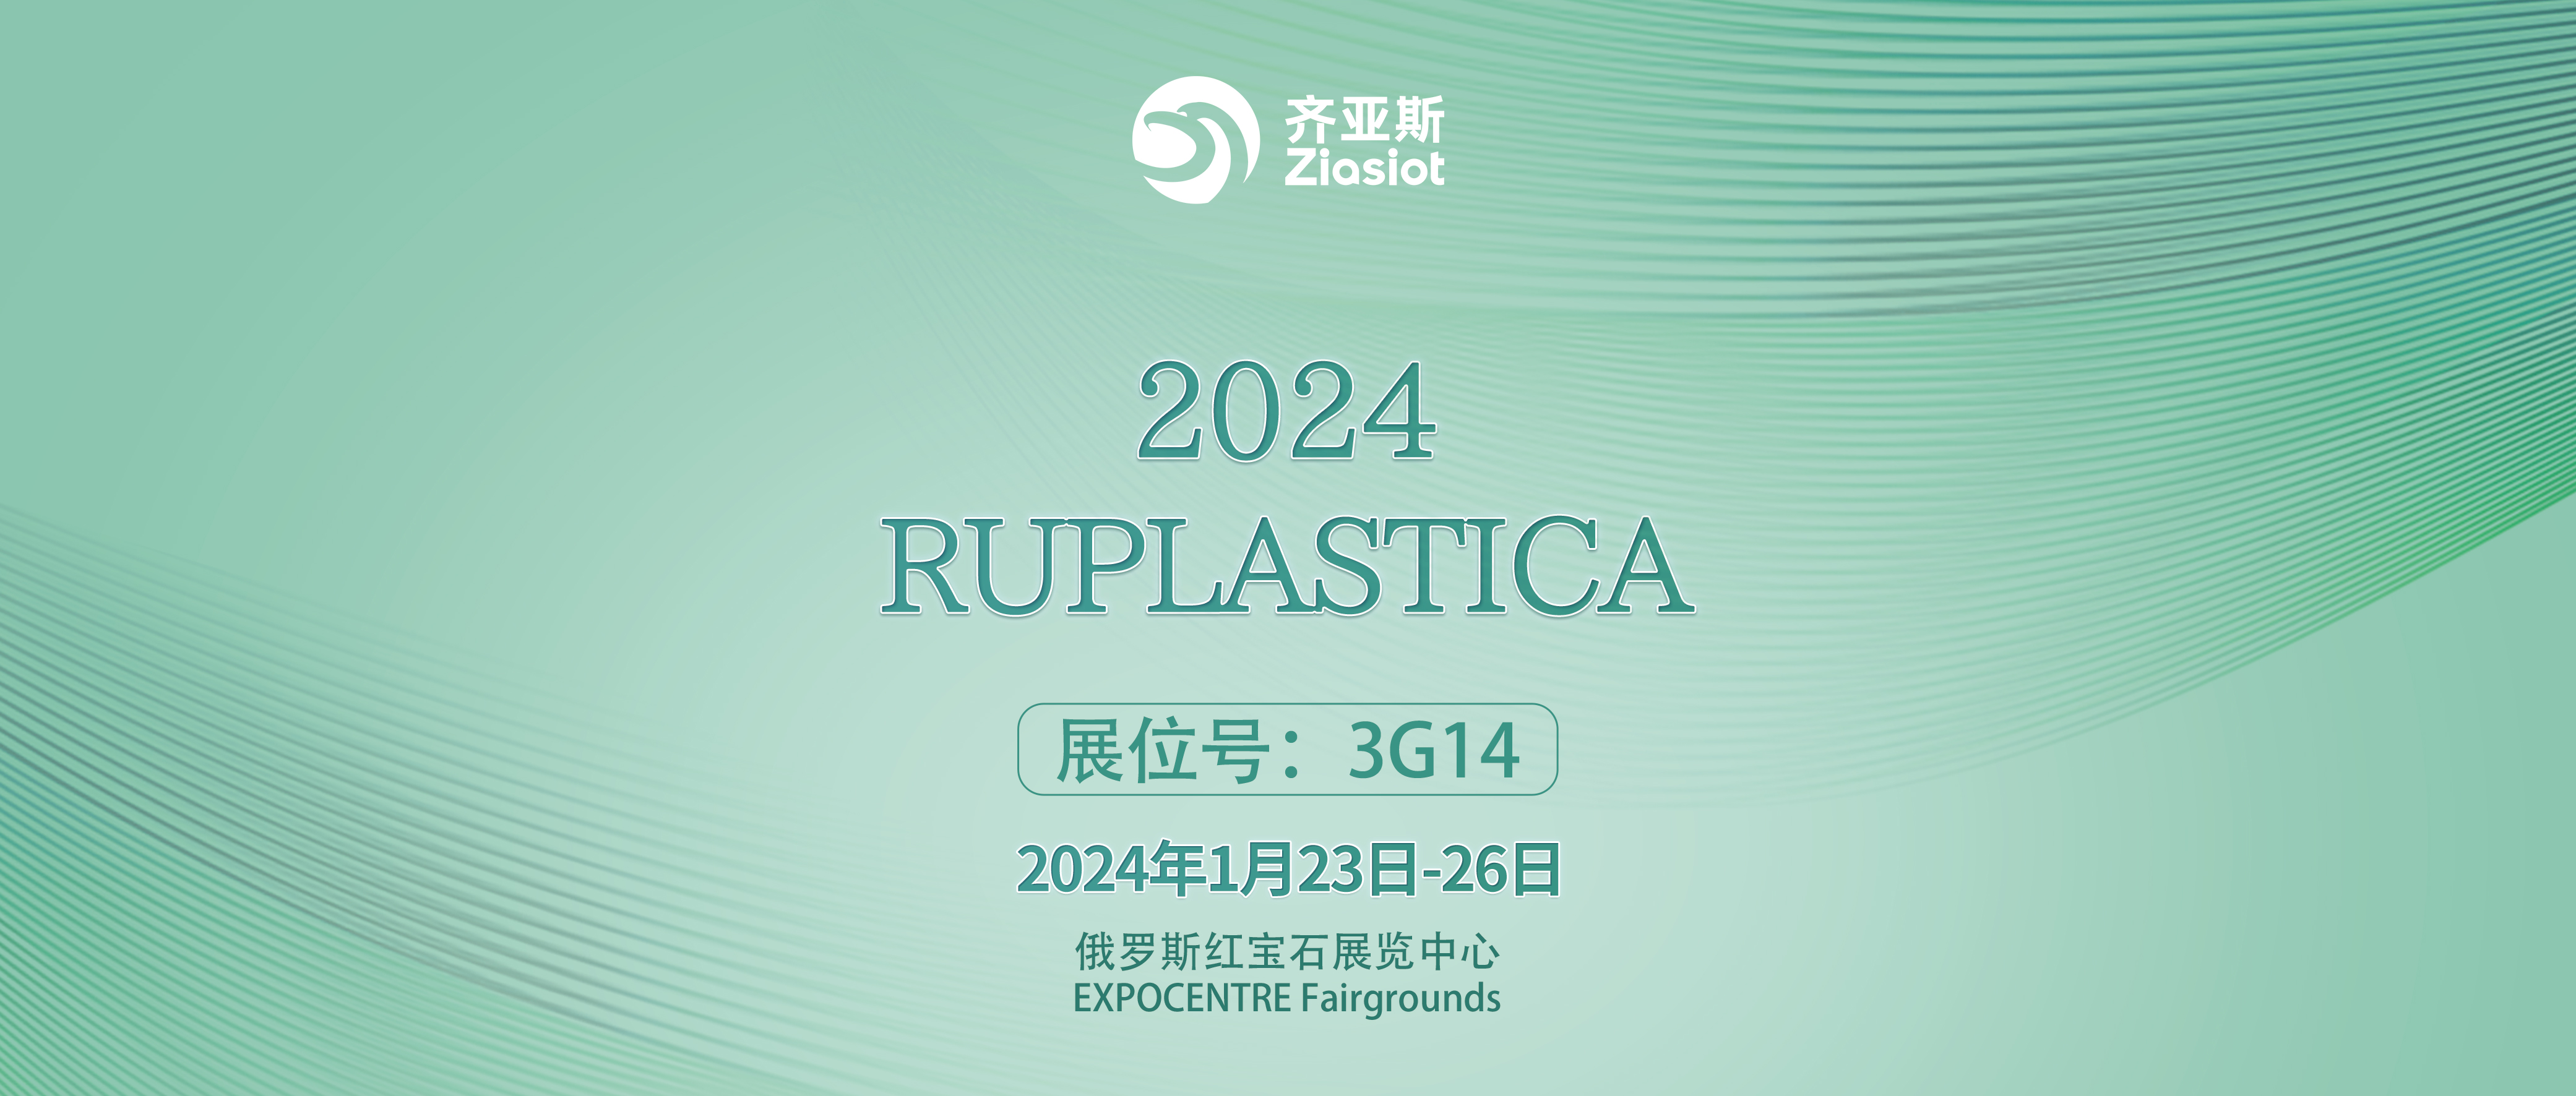 齐亚斯|向您发来俄罗斯2024 RUPLASTICA展会邀请